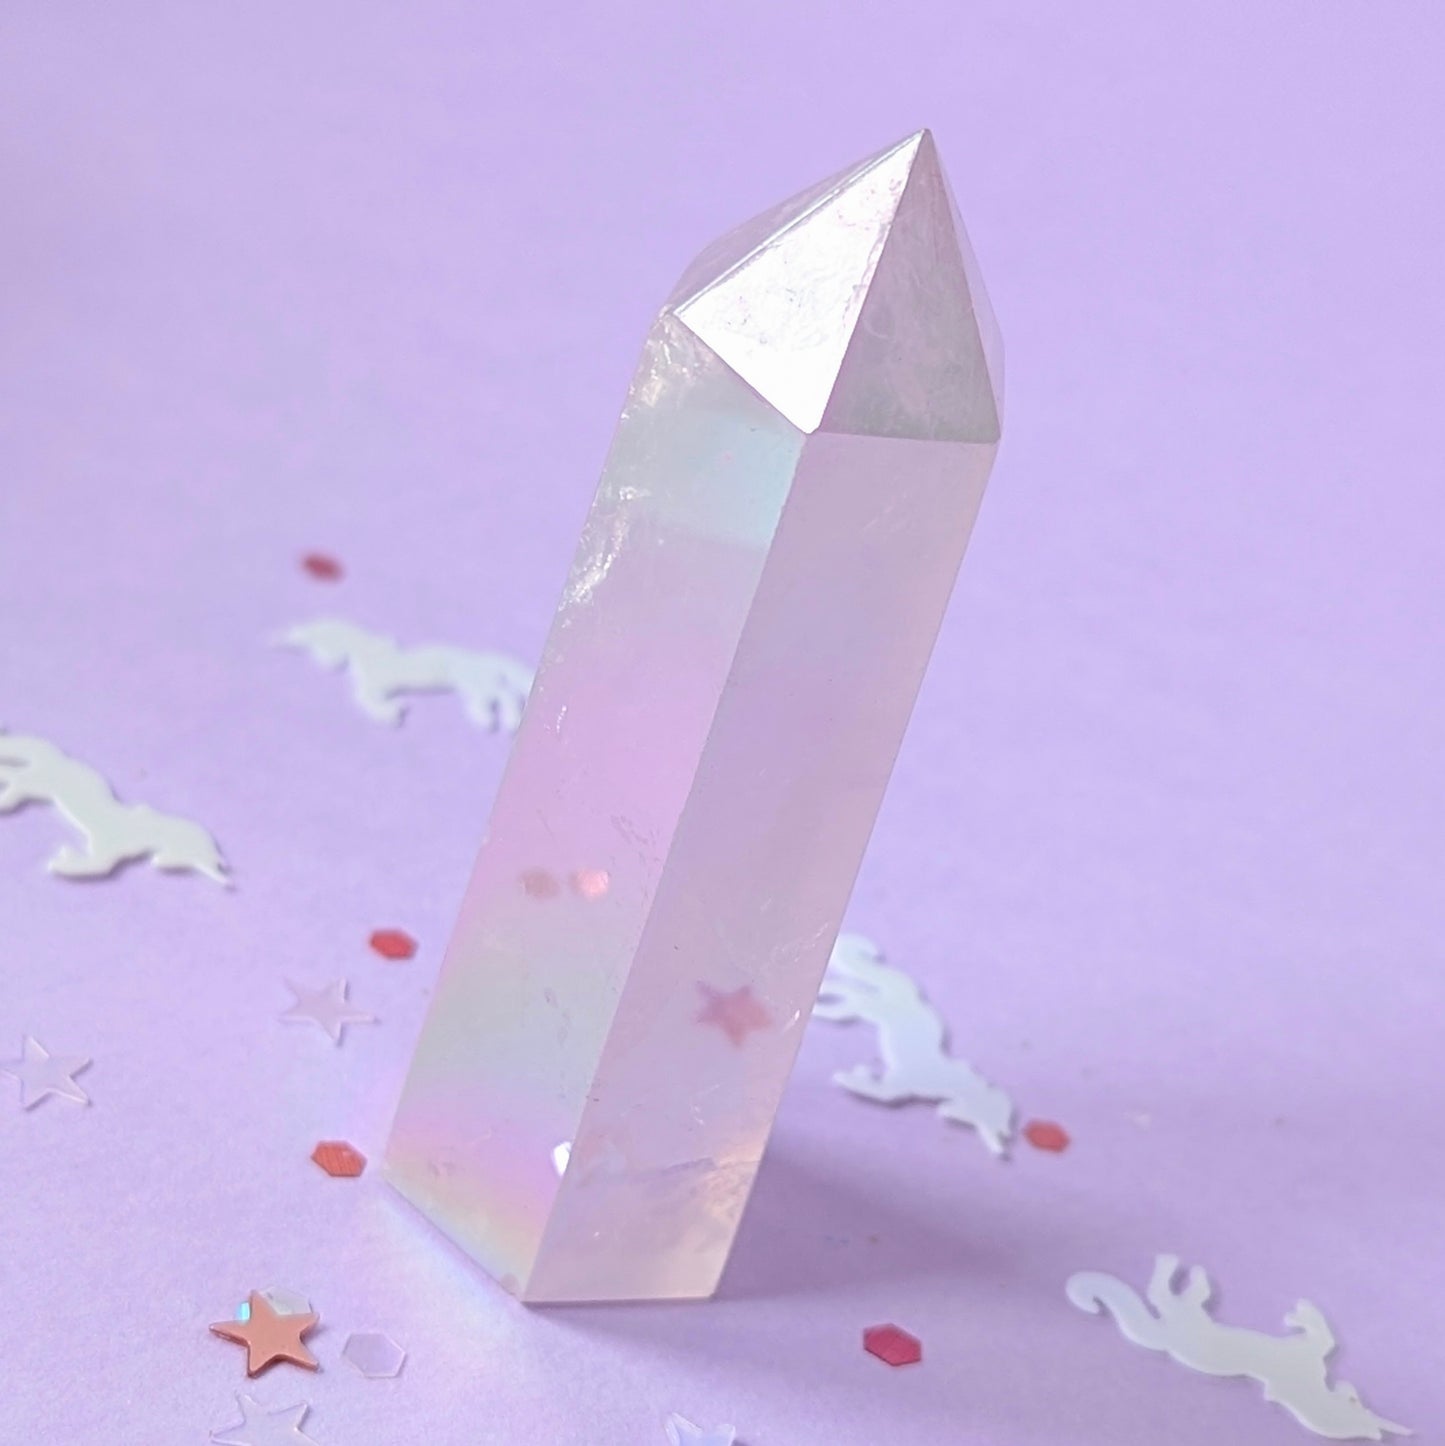 Cristaux : Aura rose quartz